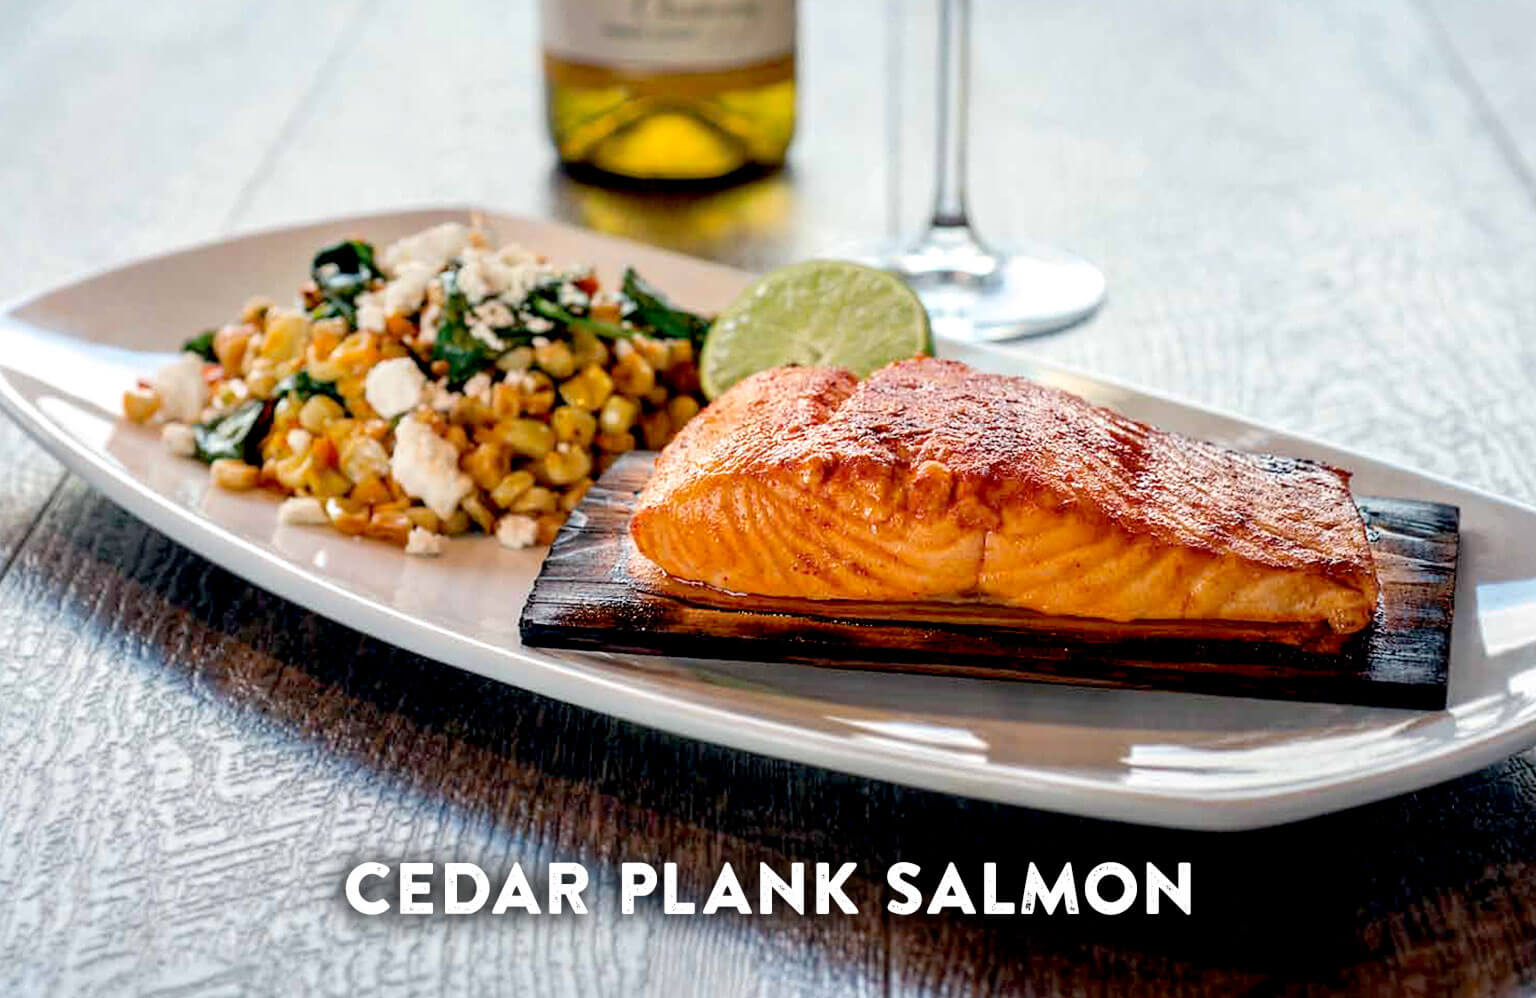 シダープランクサーモン - Cedar Plank Salmon